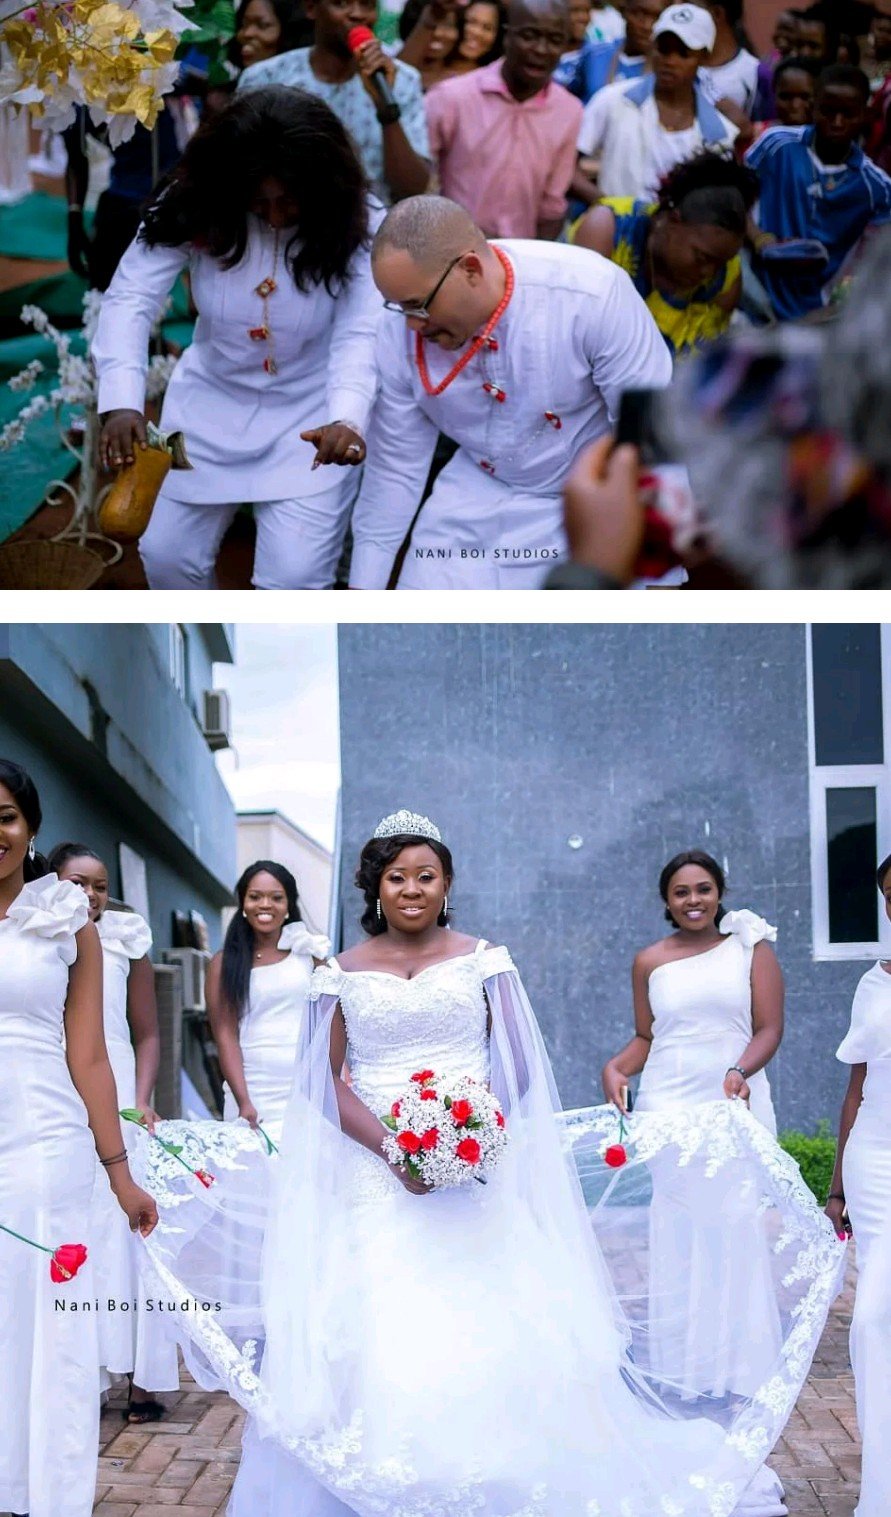 Amerian Man Marries His Igbo Bride In Enugu